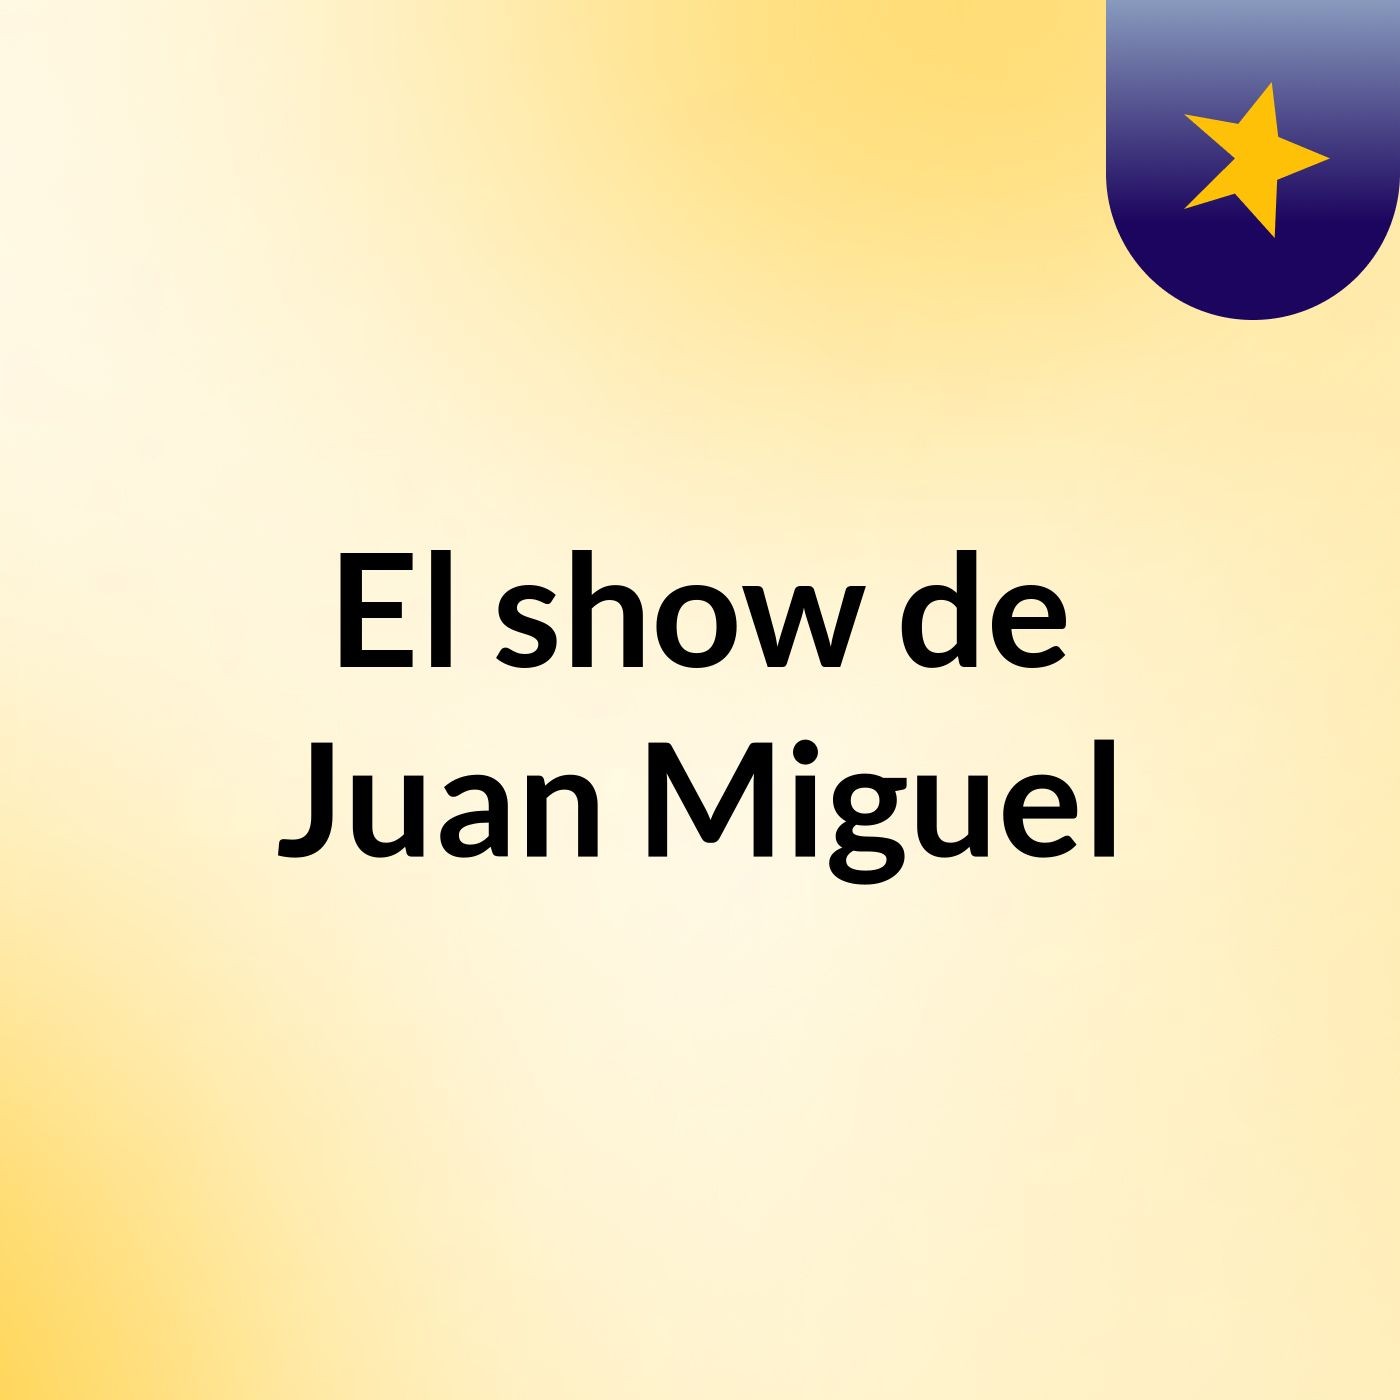 El show de Juan Miguel